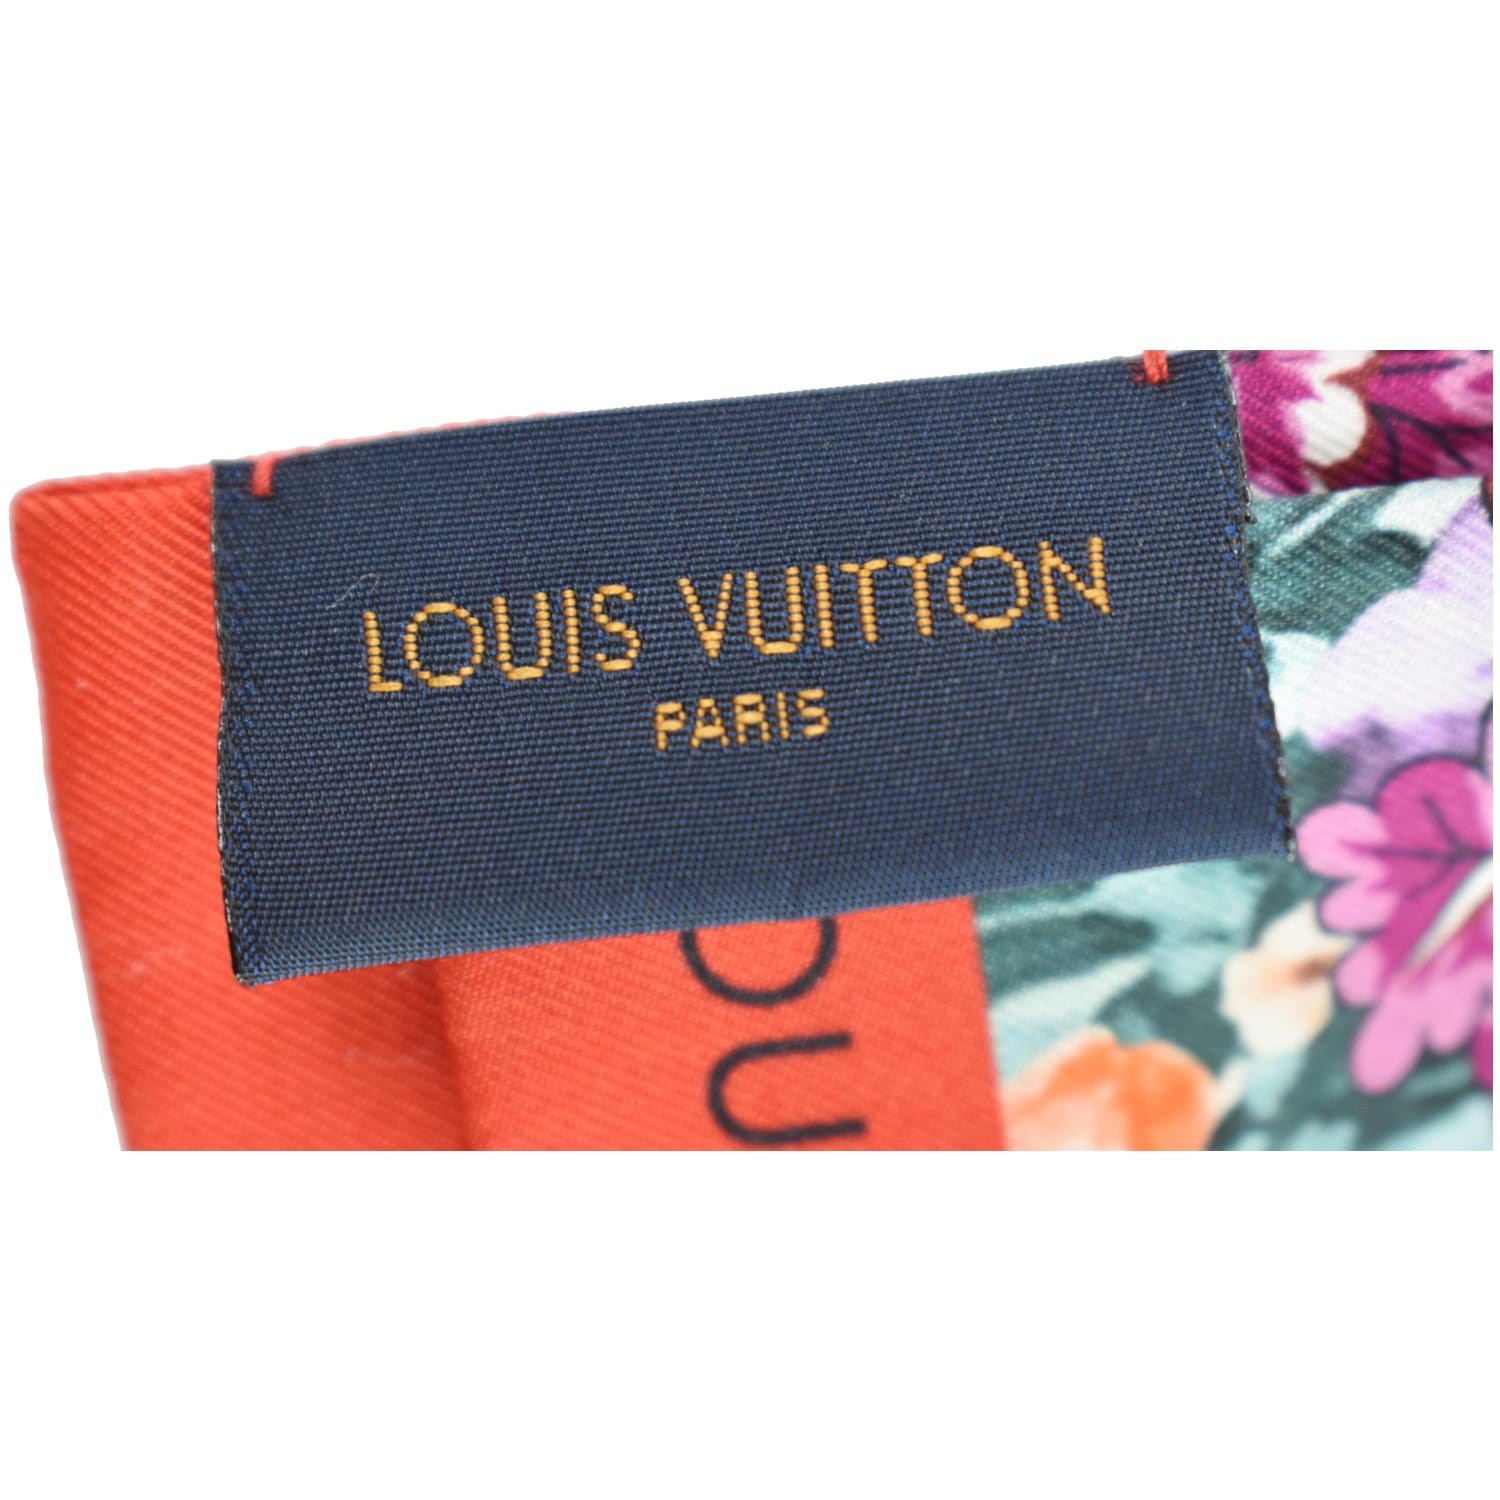 Louis Vuitton Bleu Rose Perfect Match Silk Bandeau Louis Vuitton